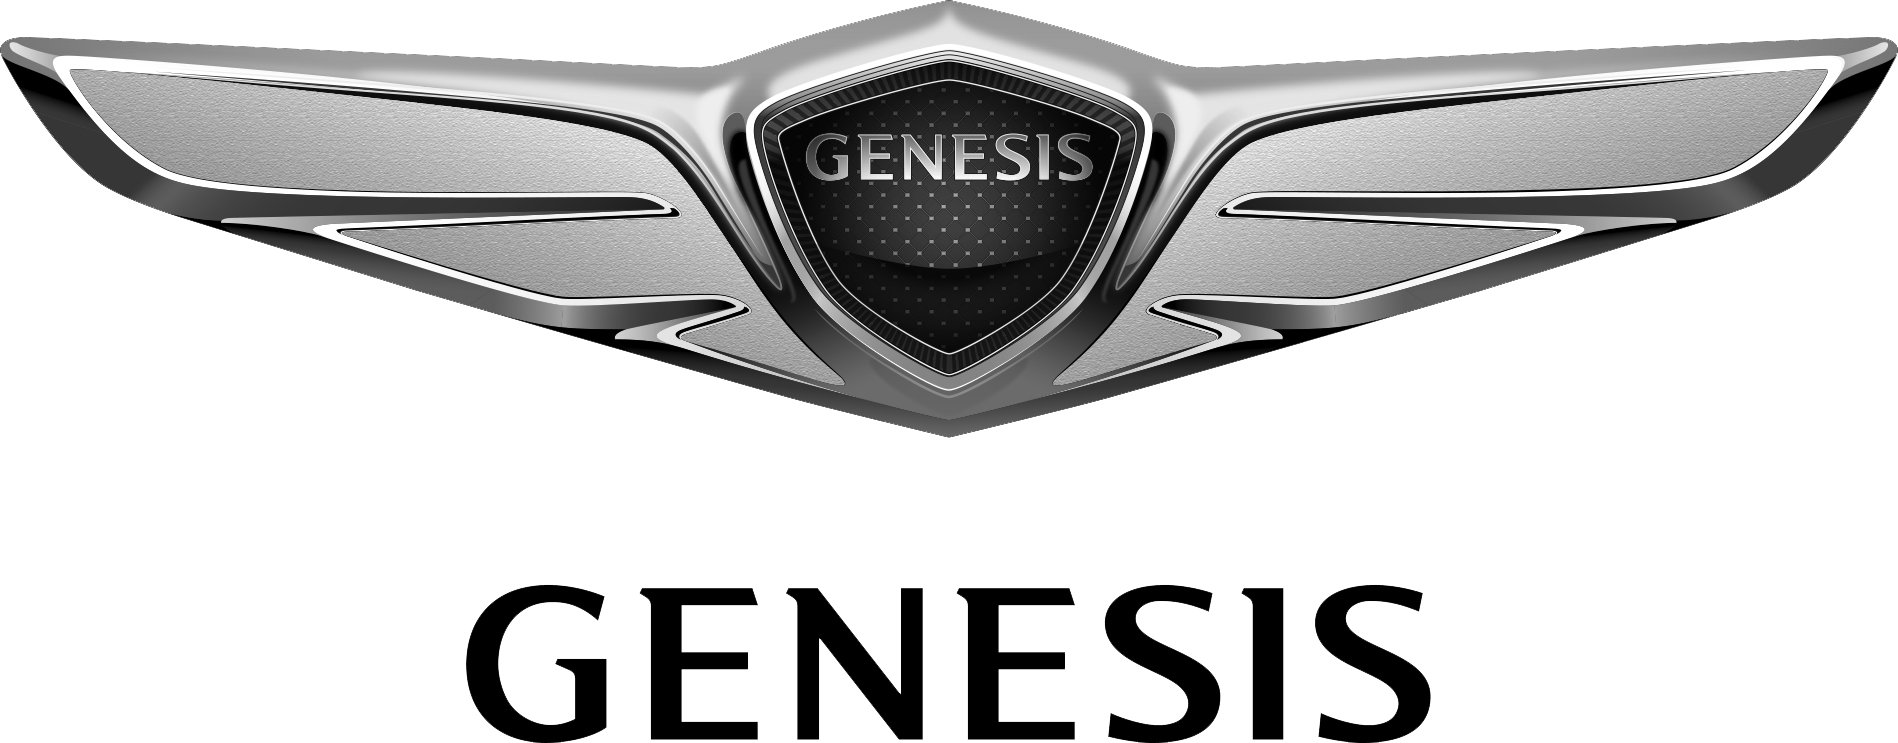 Genesis Coupe Logo - Hyundai Genesis Coupe HYUNDAI NEW THINKING Logo Image Logo Png